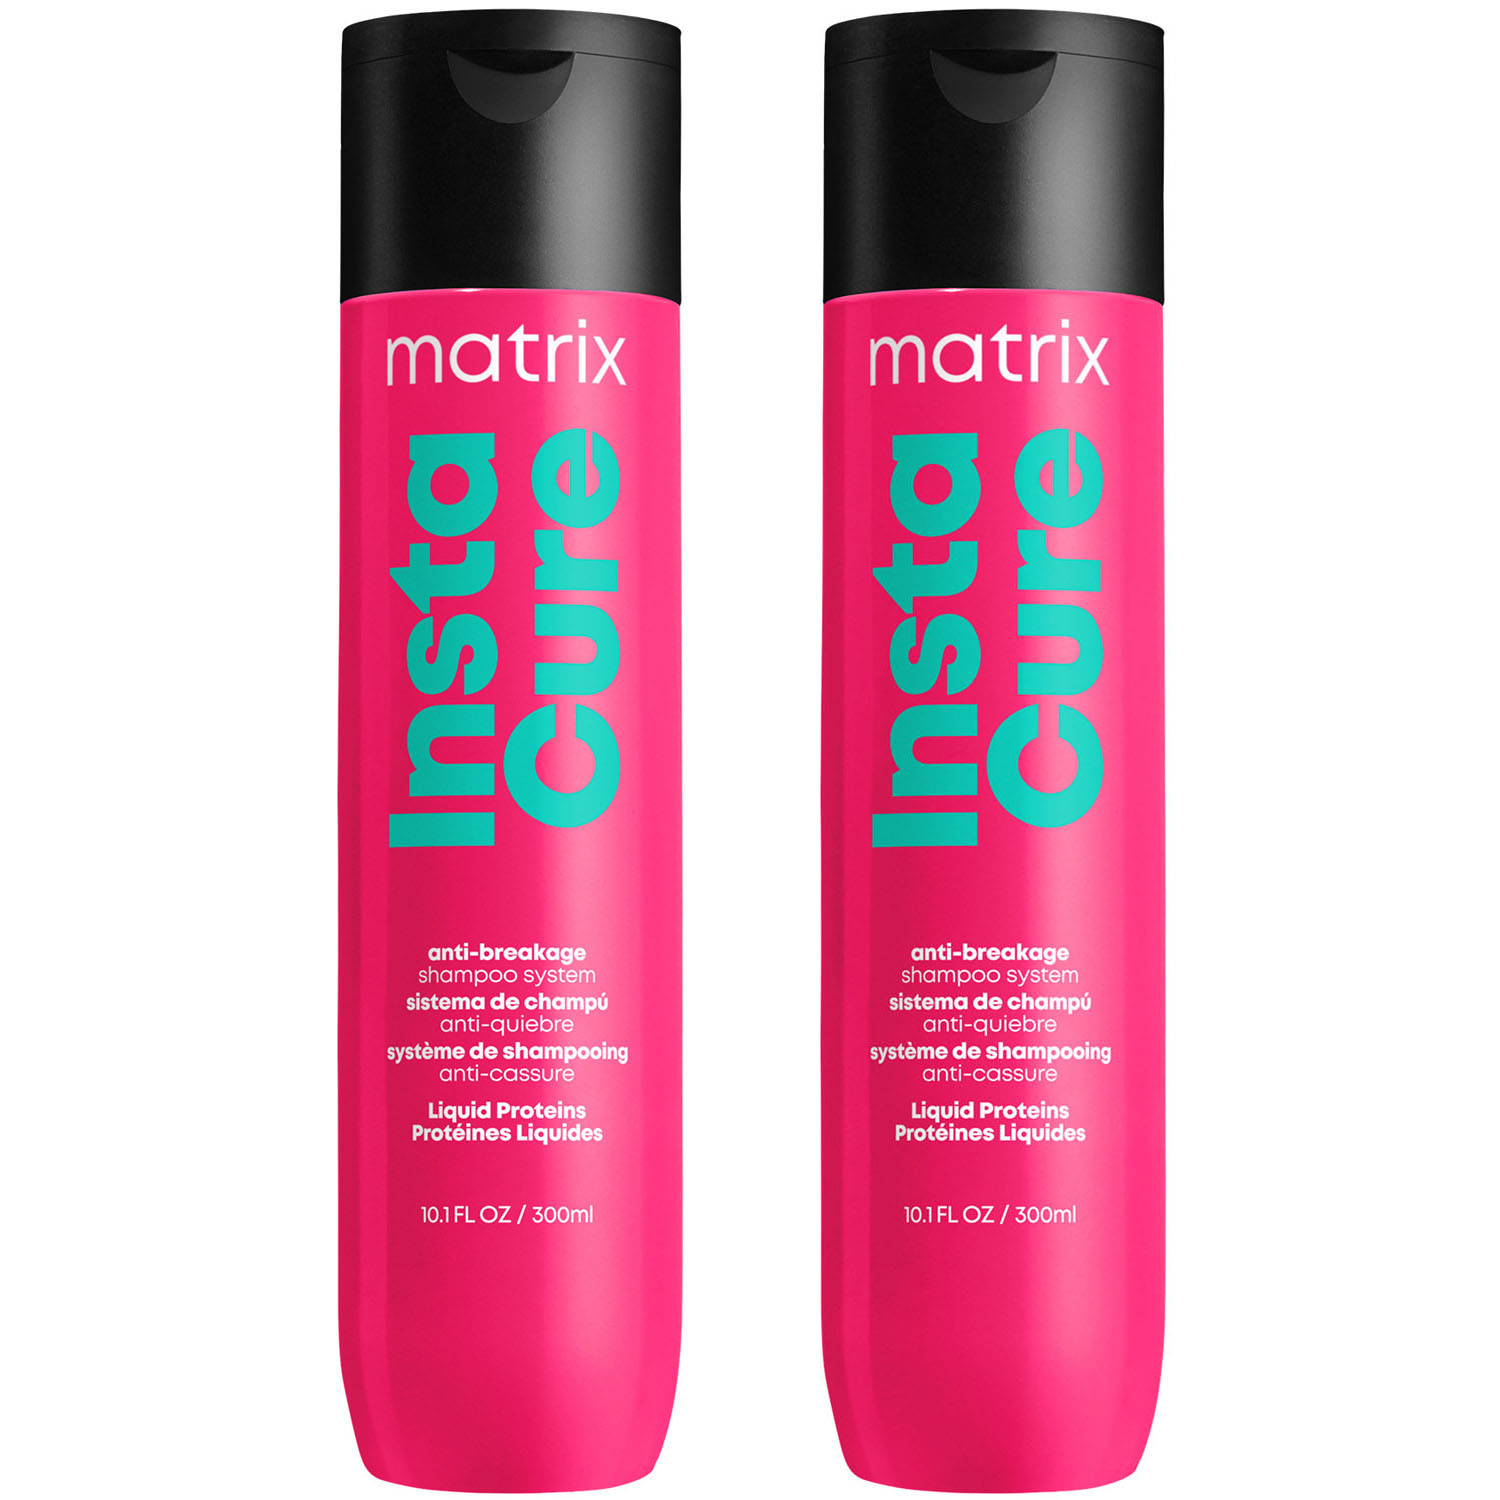 Matrix Профессиональный шампунь Instacure для восстановления волос с жидким протеином, 300 мл х 2 шт (Matrix, Total Results) шампунь против ломкости instacure 300 мл